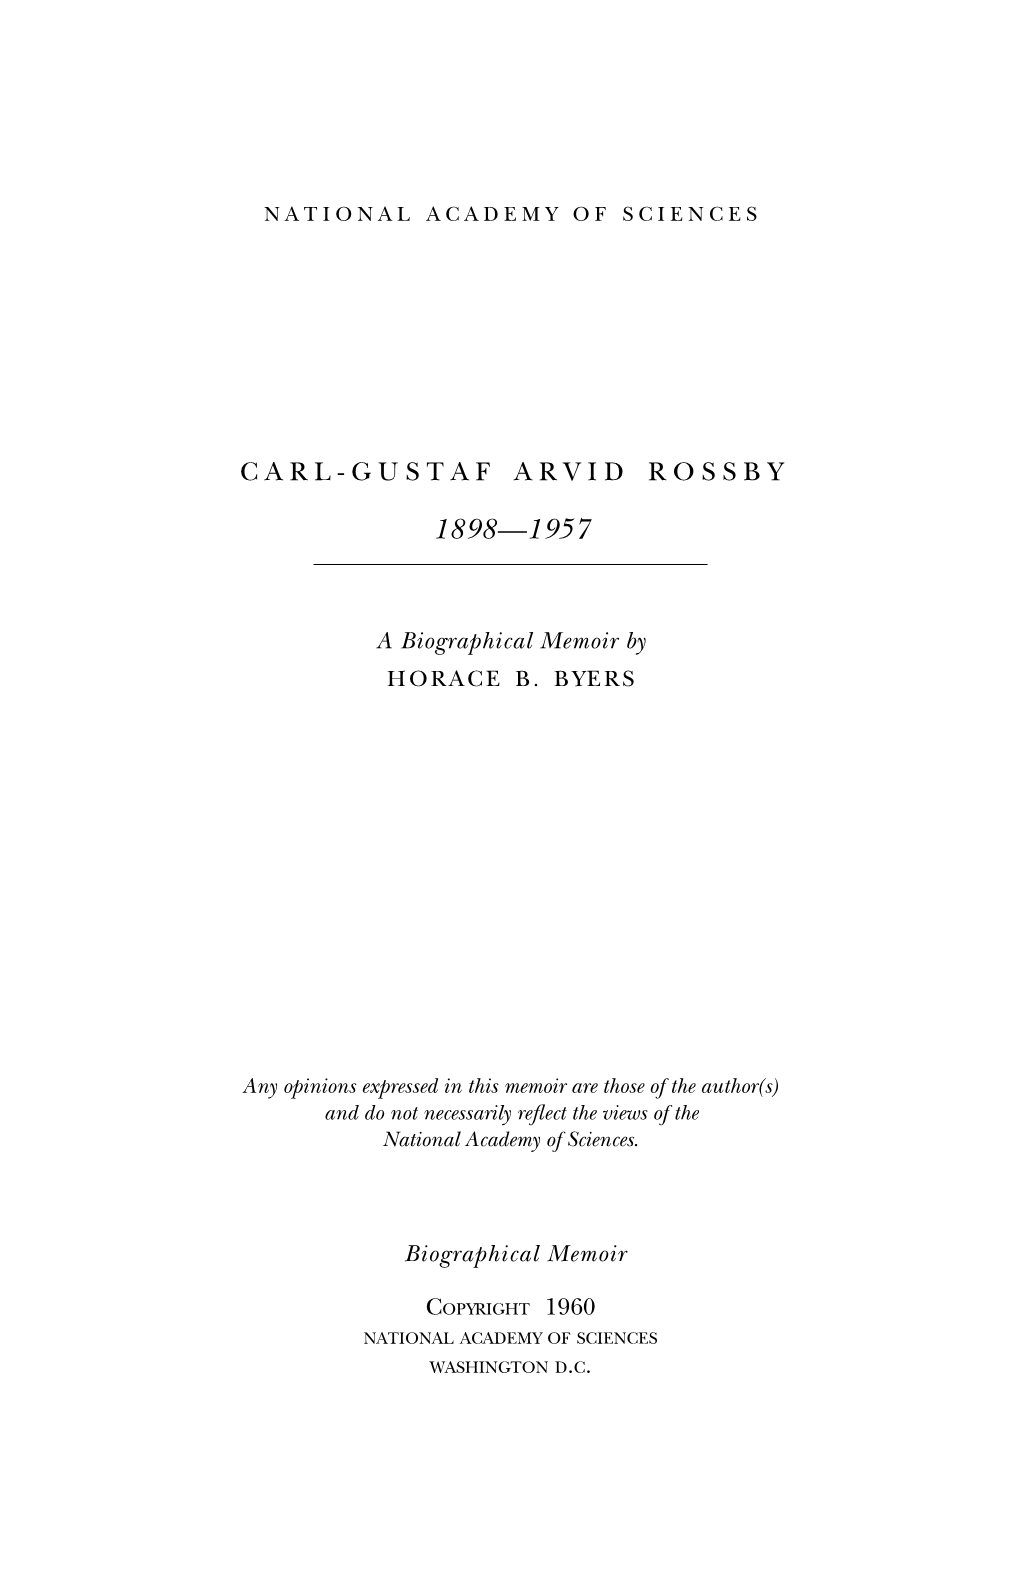 Carl-Gustaf Arvid Rossby